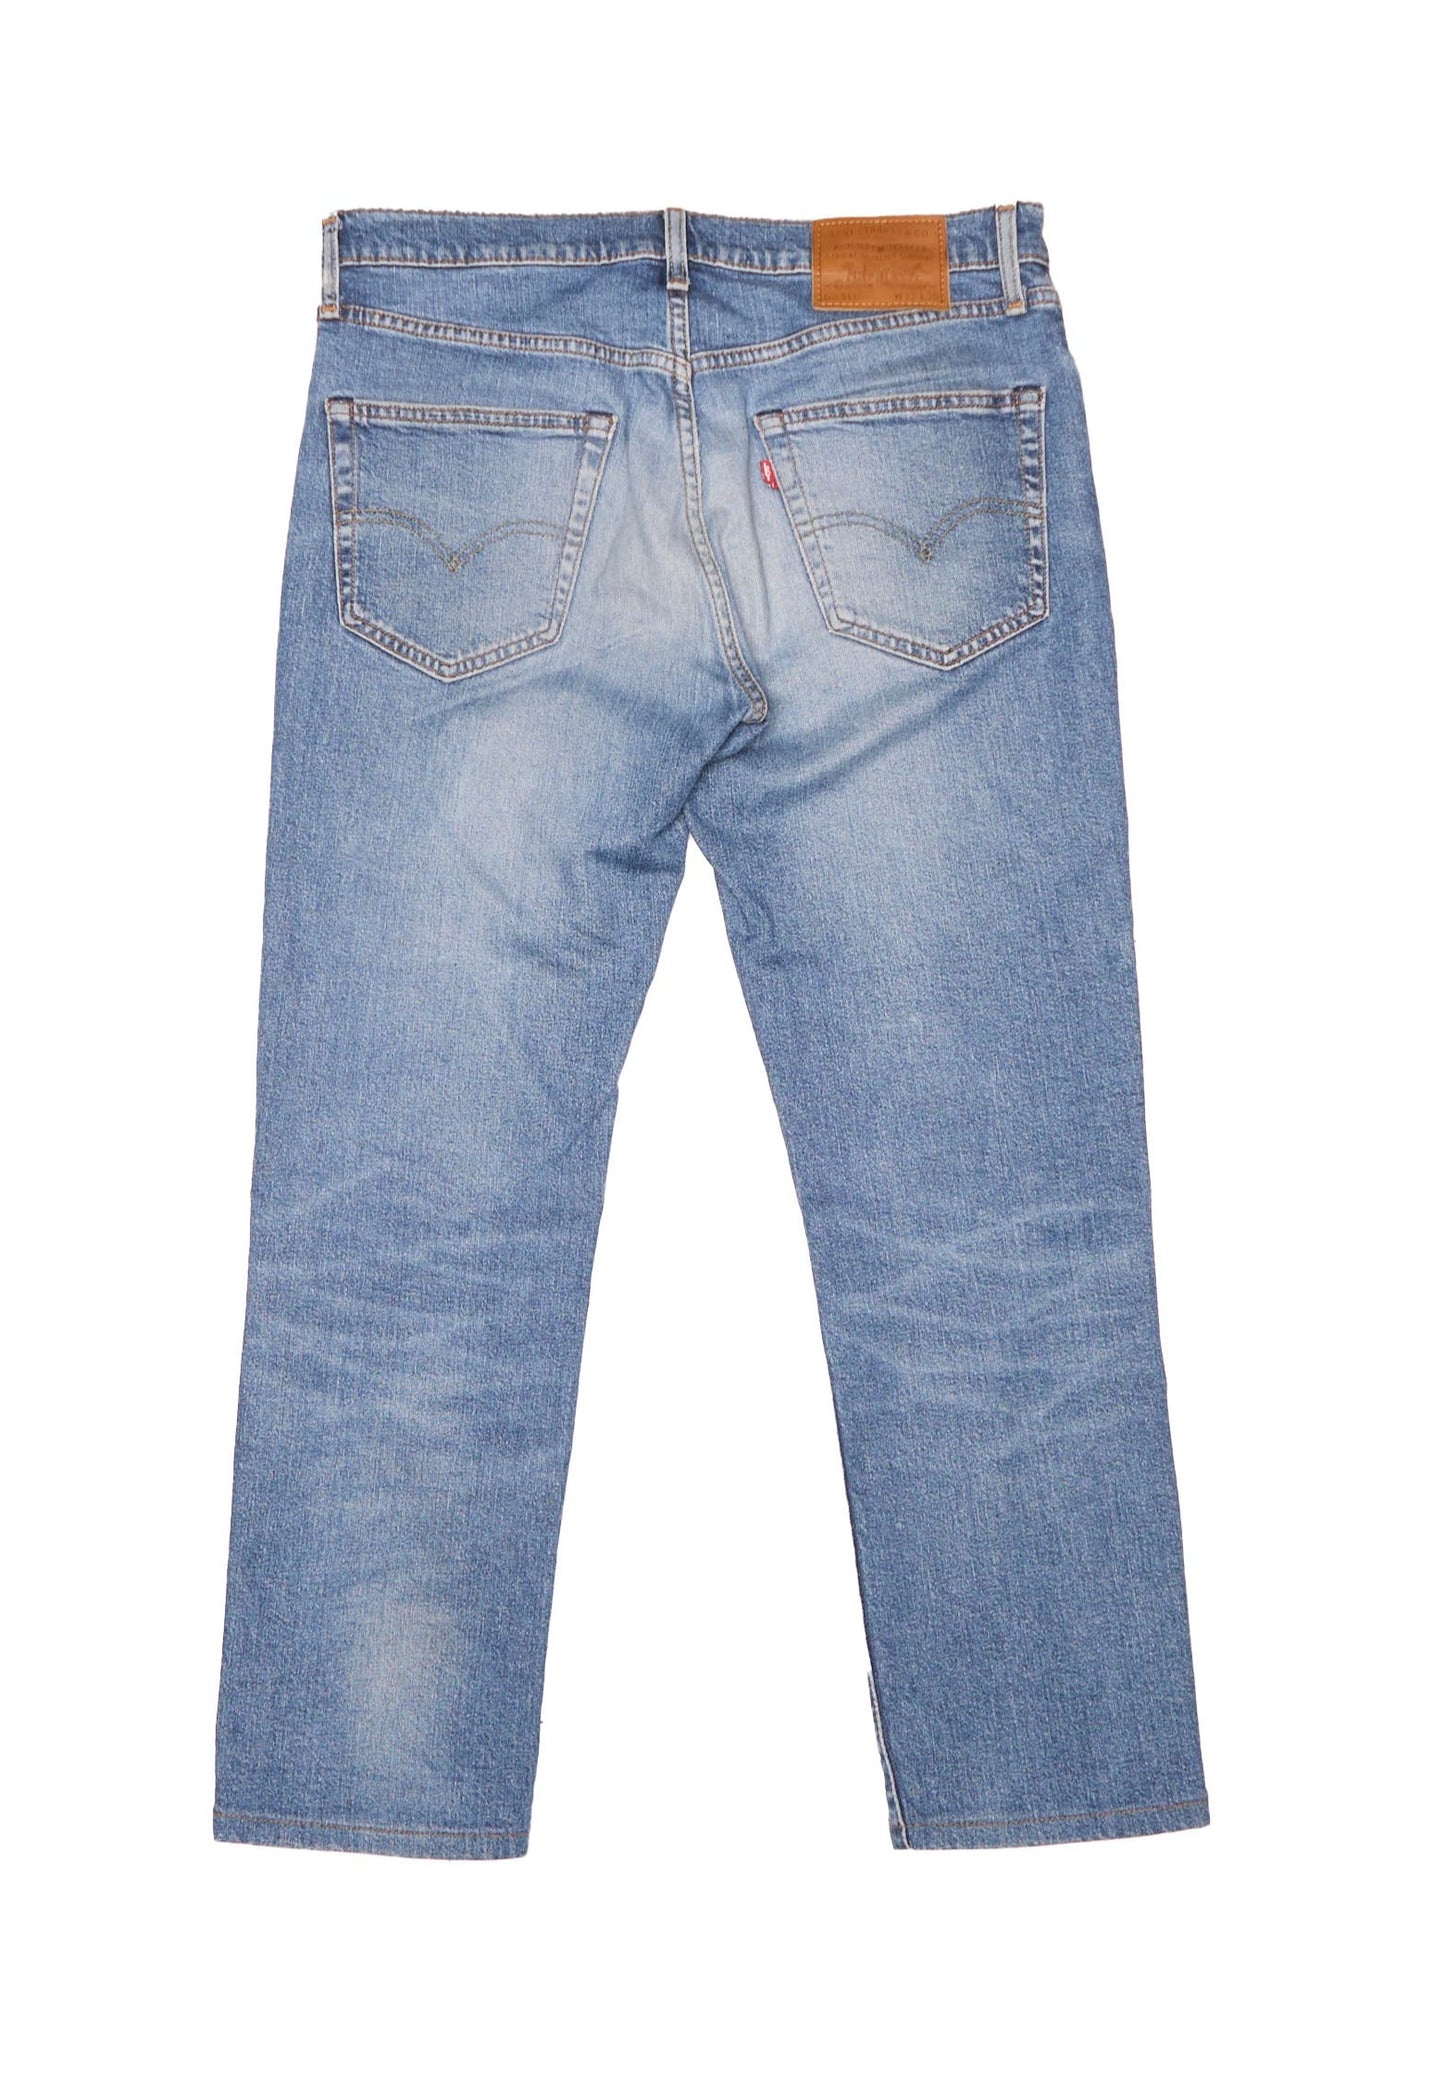 Levis Straight Cut Jeans - W28" L31"